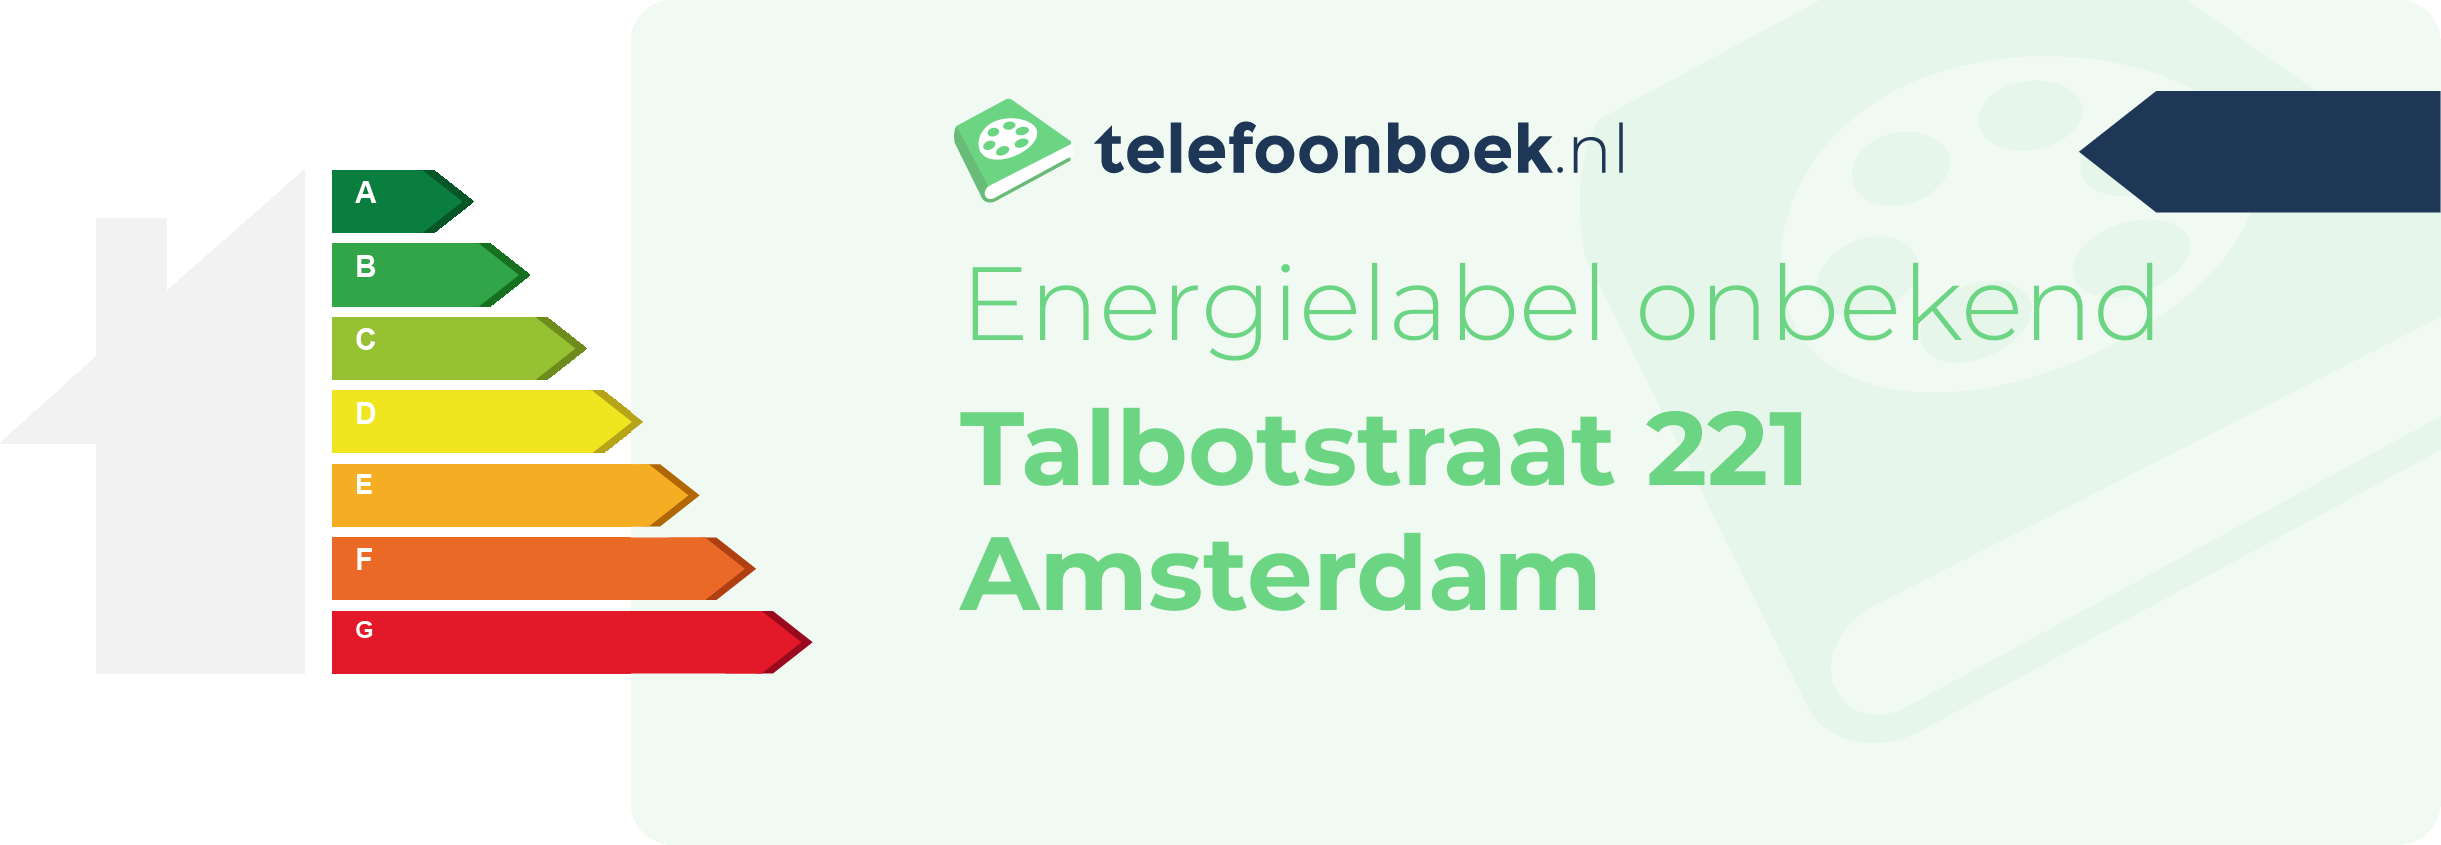 Energielabel Talbotstraat 221 Amsterdam